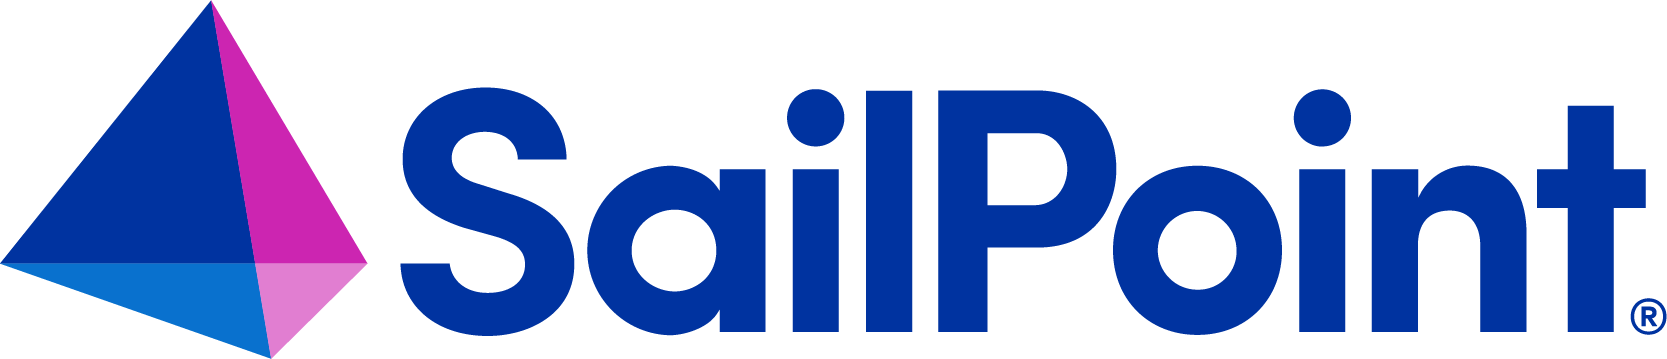 Sailpoint logo